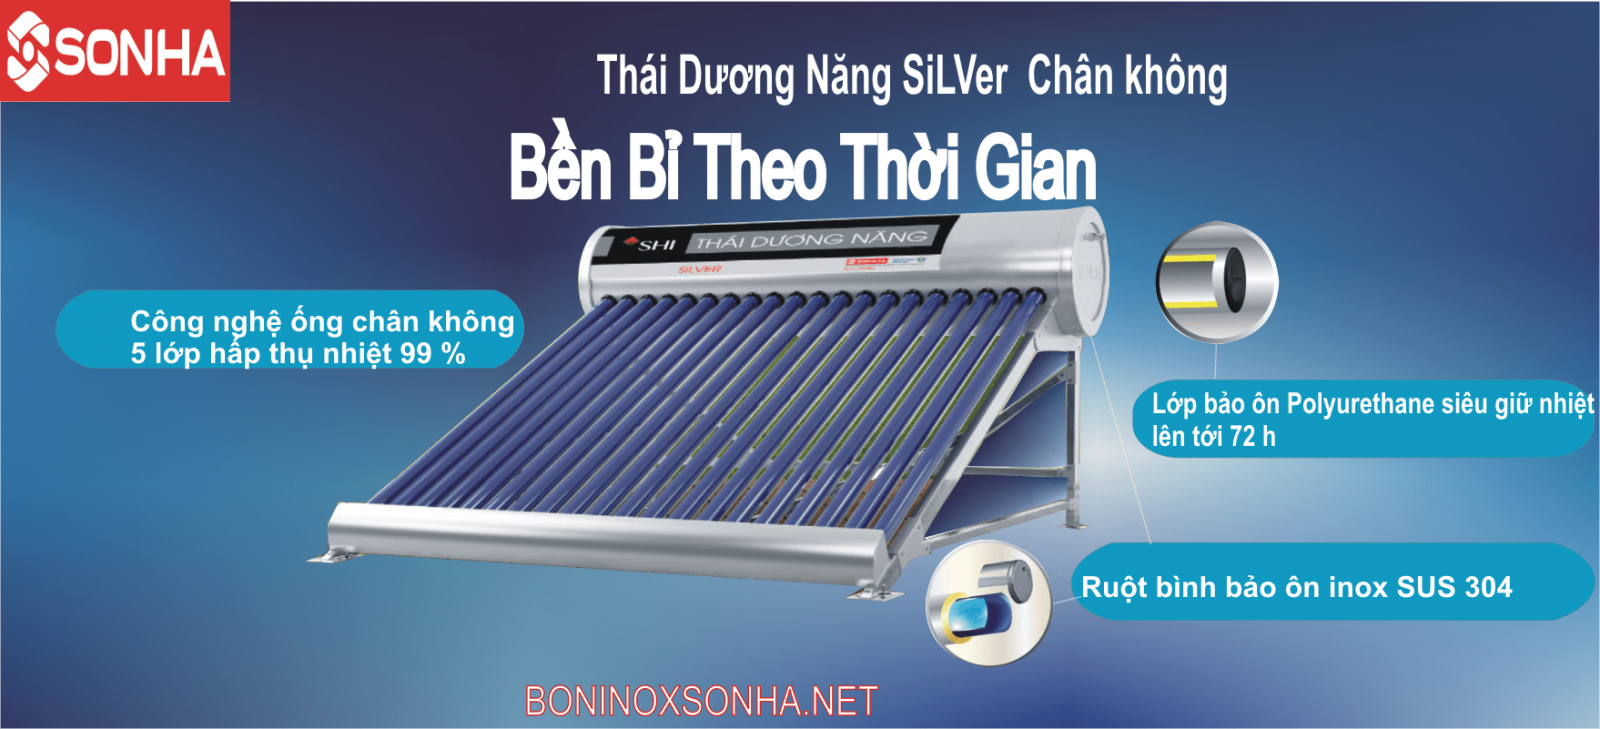 THÁI DƯƠNG NĂNG SILVER 58 - 200 Chân Không Sơn hà